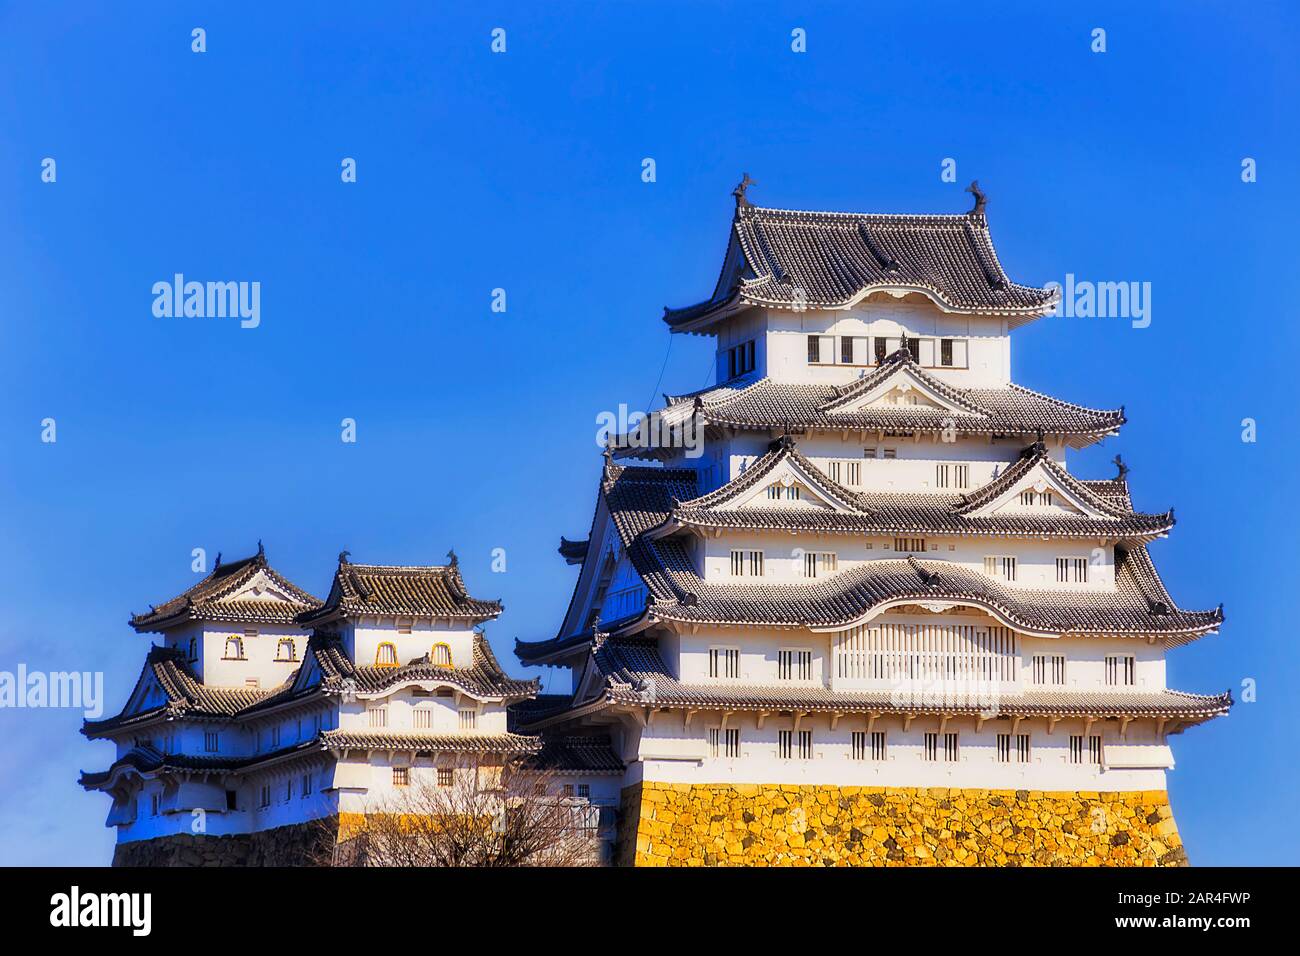 Le principal donjon du château blanc au Japon, près de la ville d'Osaka, fait face au ciel bleu dans une lumière de soleil vive - l'architecture japonaise traditionnelle. Banque D'Images